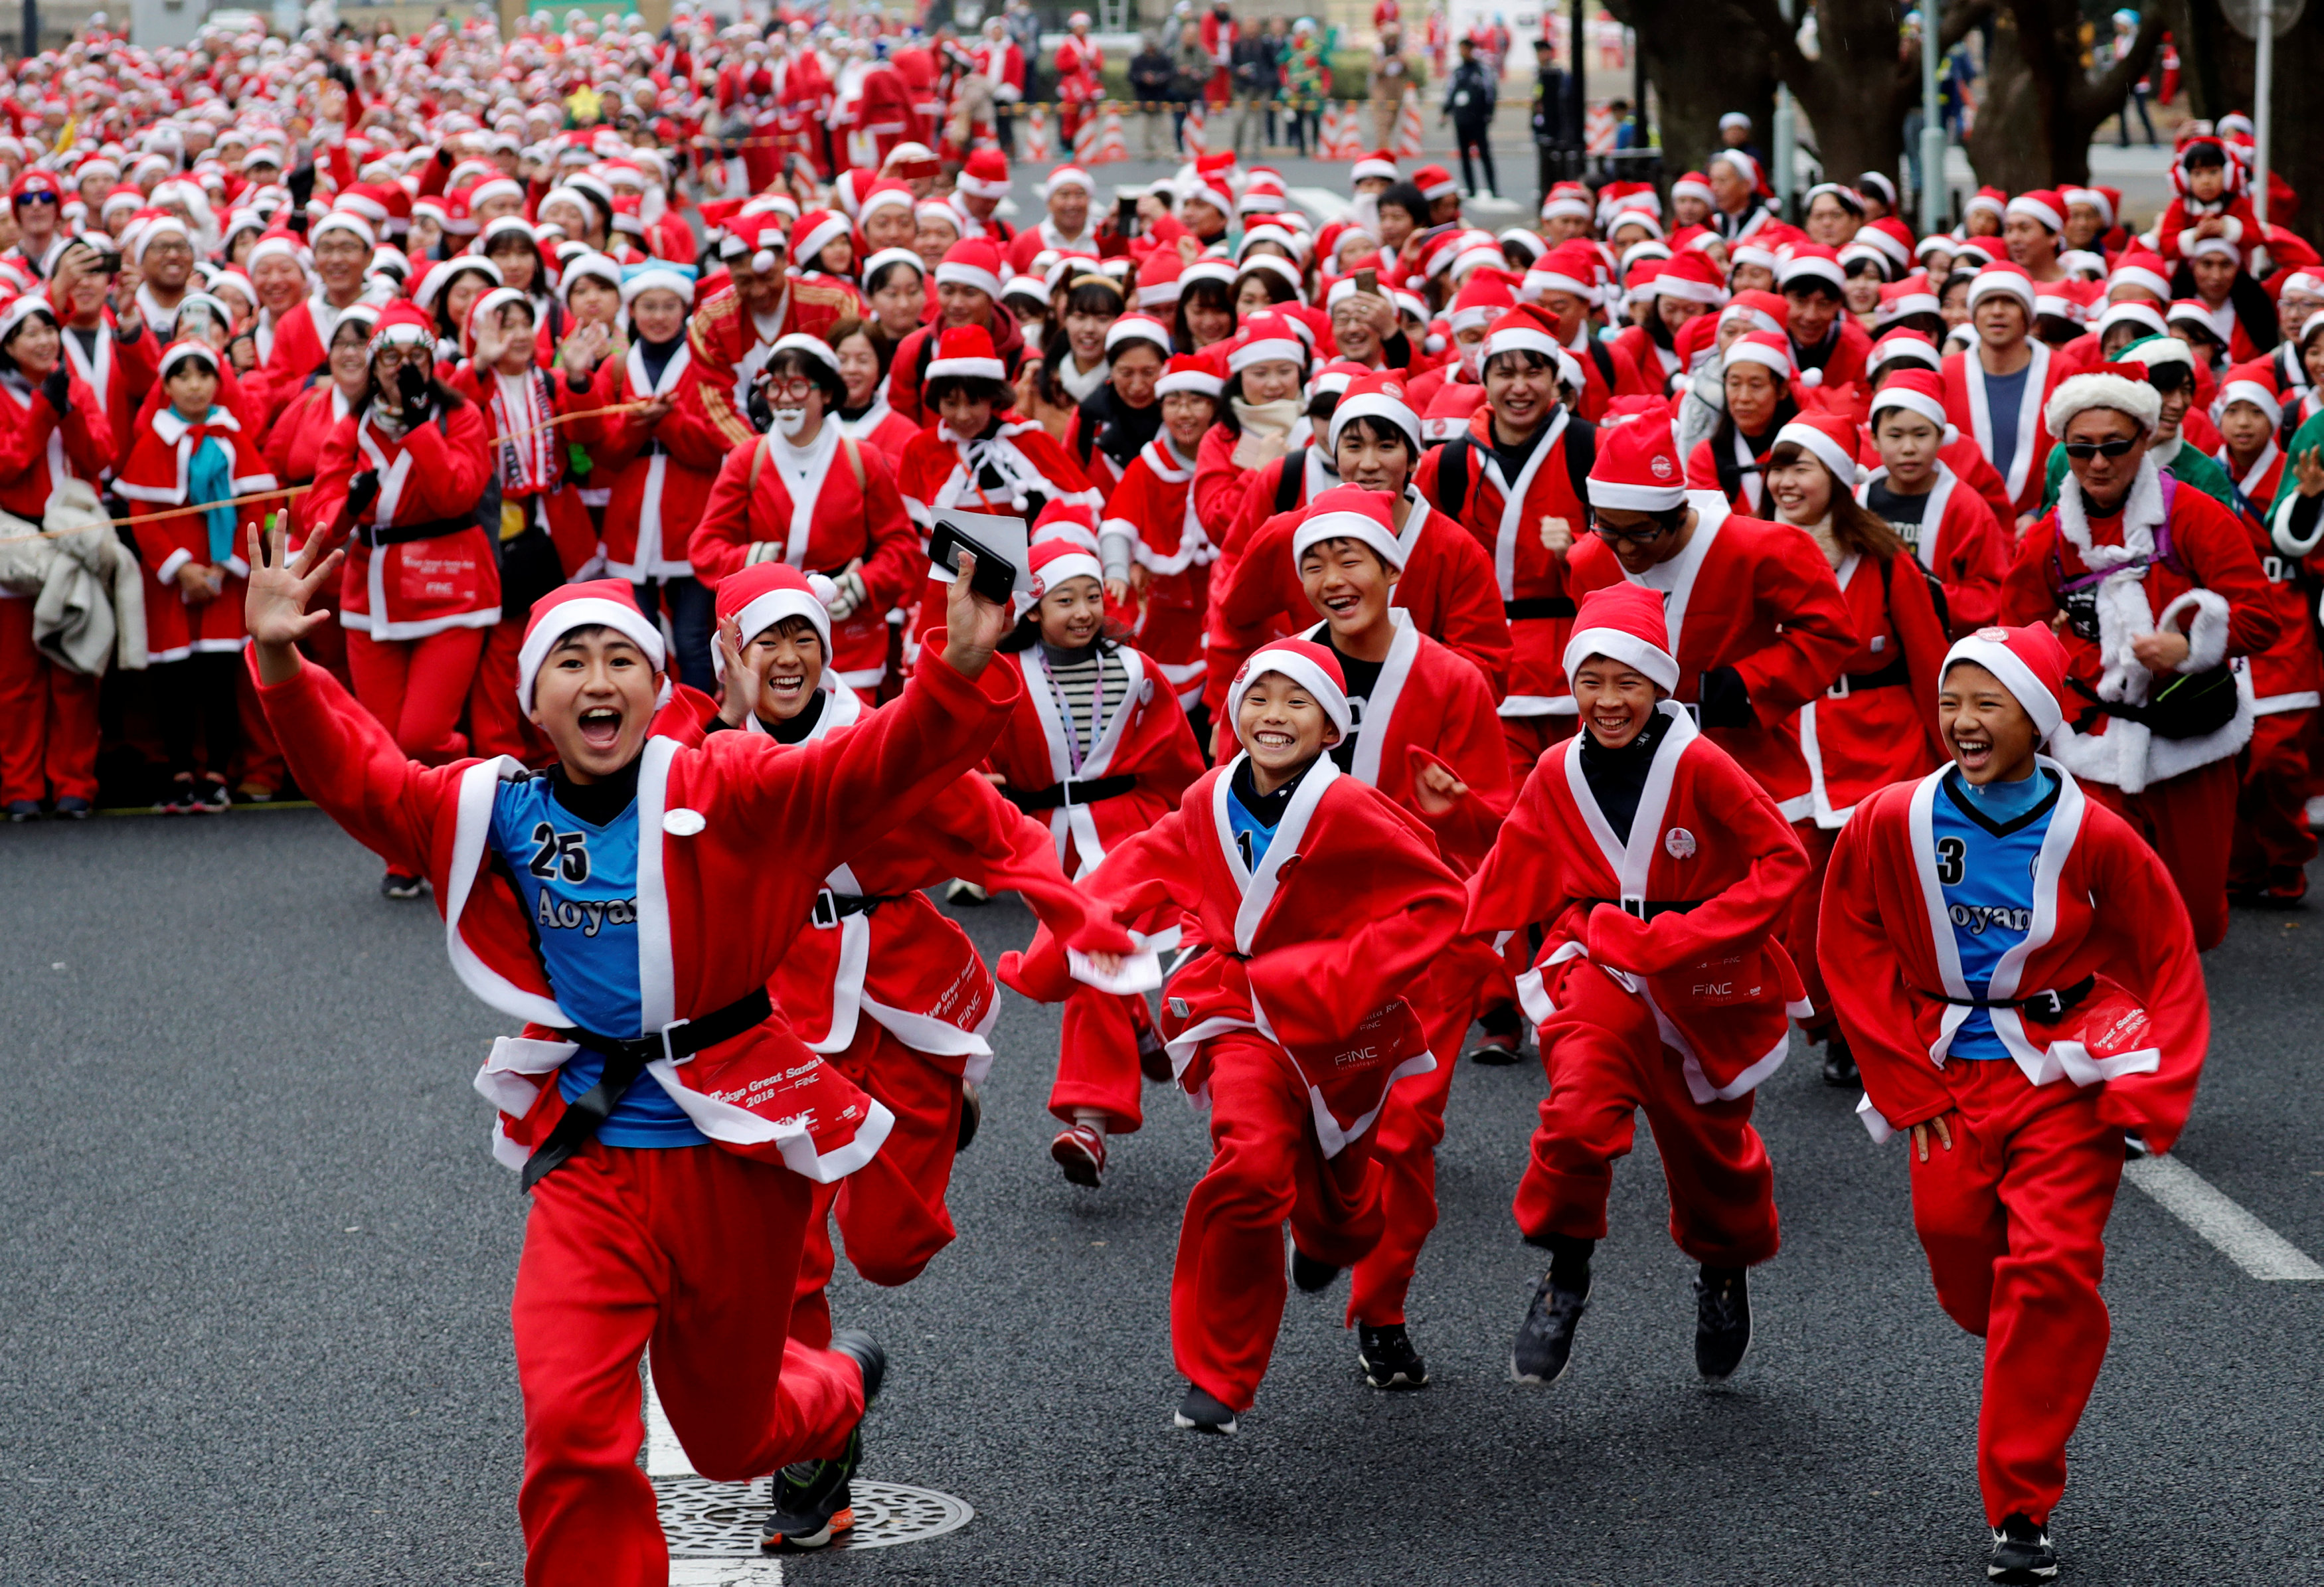 EN IMÁGENES: Más de 2 mil personas corrieron por las calles de Tokio vestidos de Santa Claus